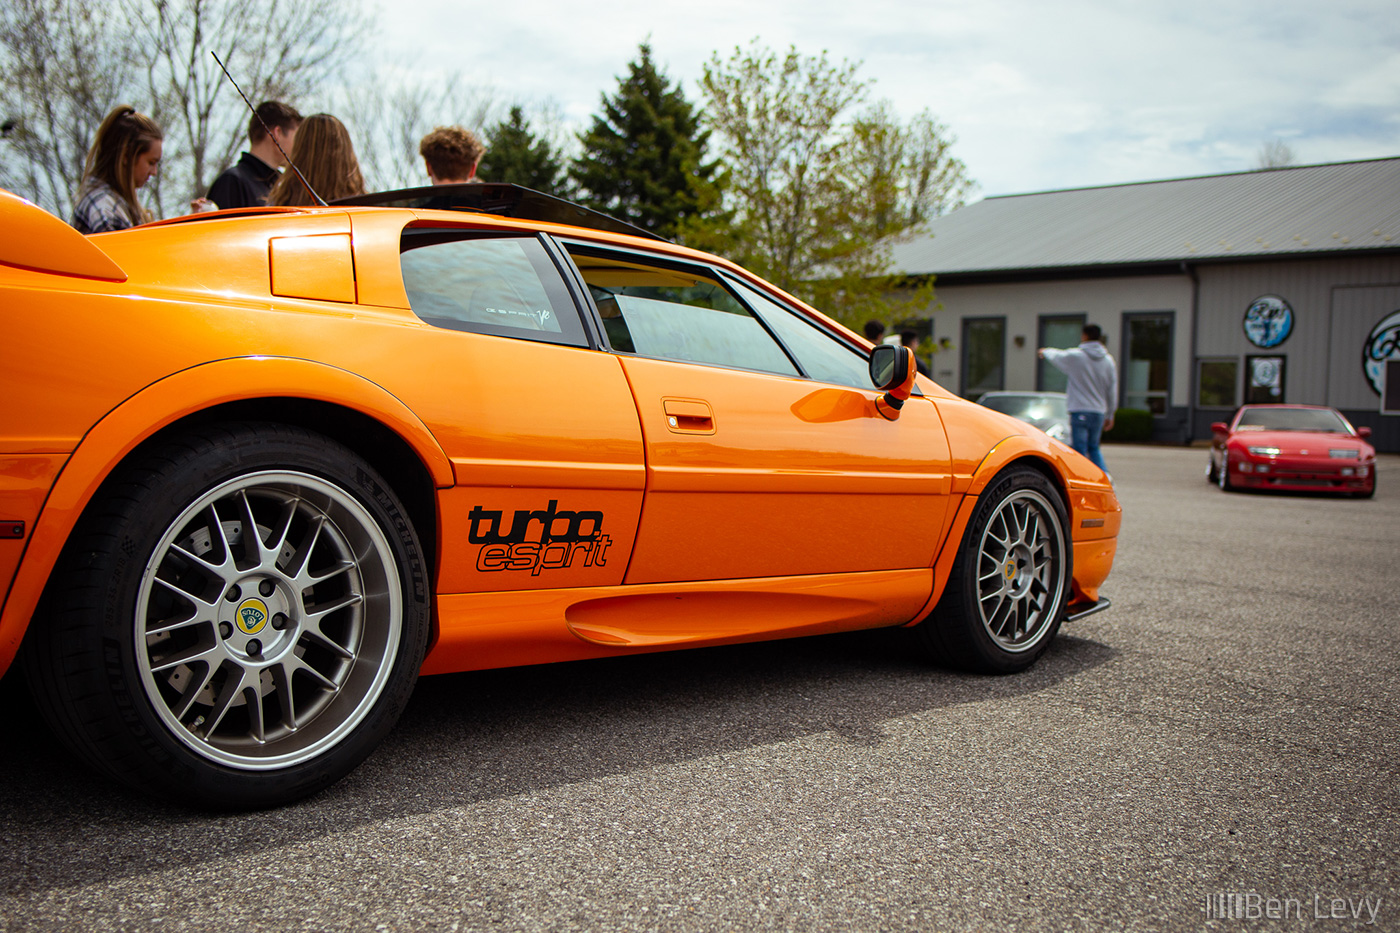 Turbo Espirit Decal on Orange Lotus Epirit V8